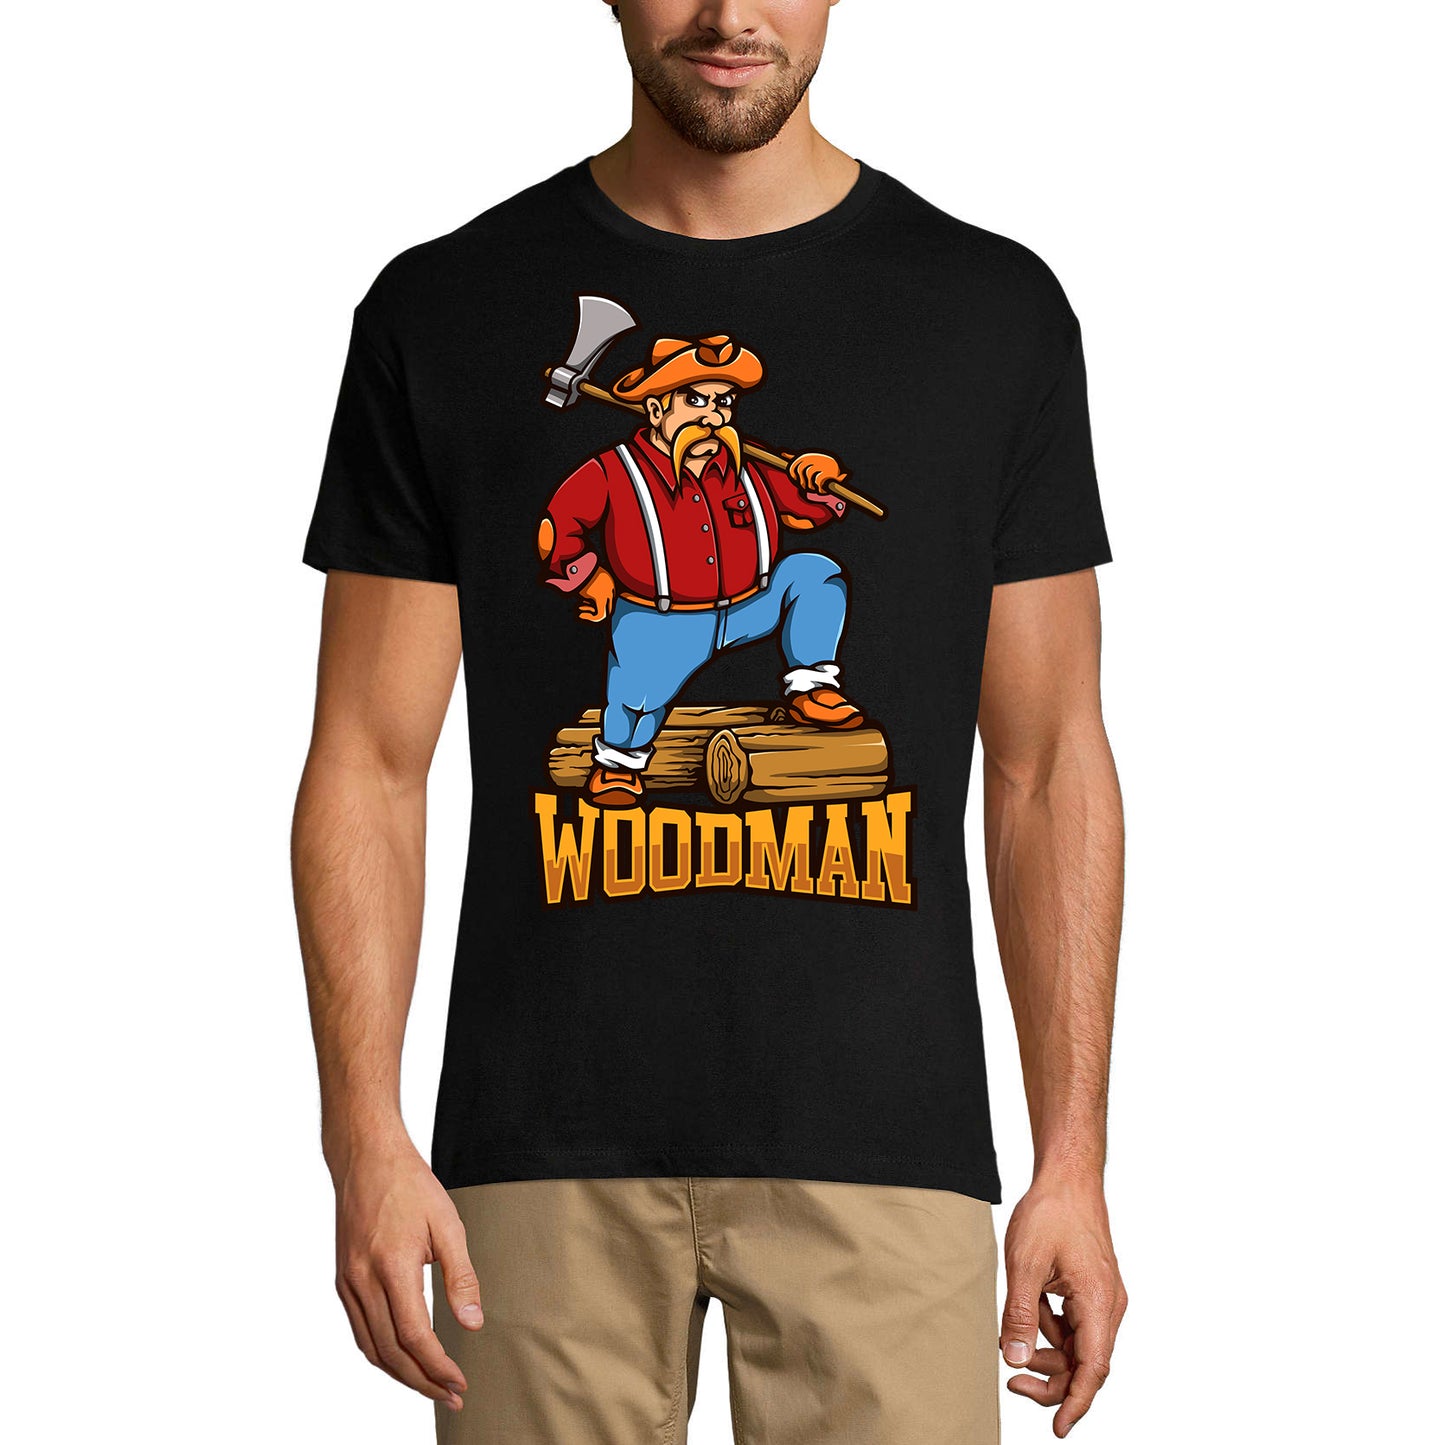 ULTRABASIC Men's Graphic T-Shirt Woodman Lumberjack - Vintage Funny Shirt